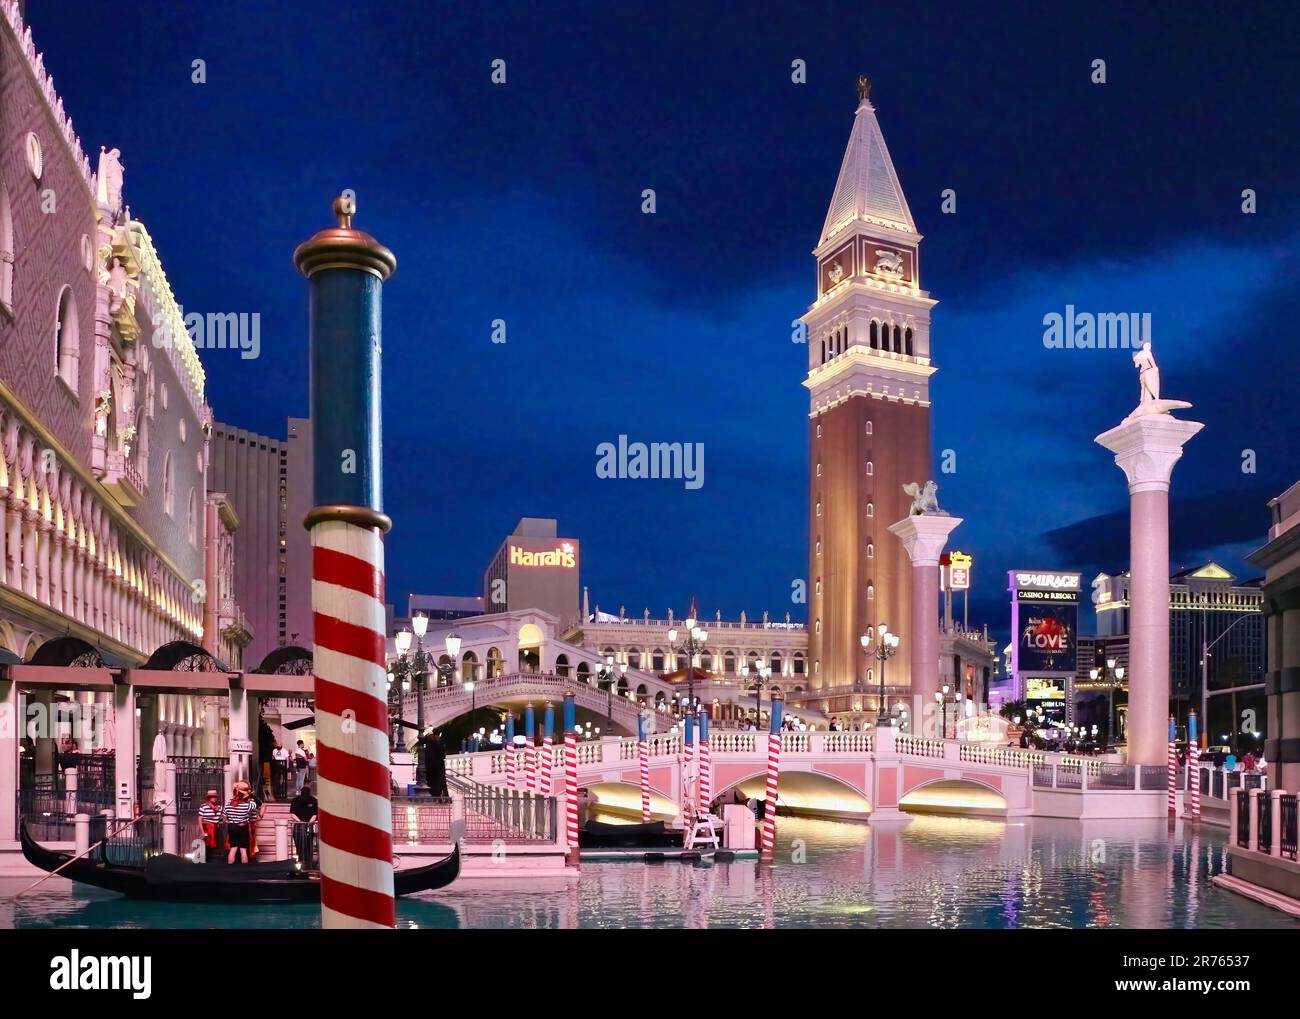 Vue en soirée du Campanile de St Marc et du pont du Rialto copies factices Las Vegas Nevada USA Banque D'Images